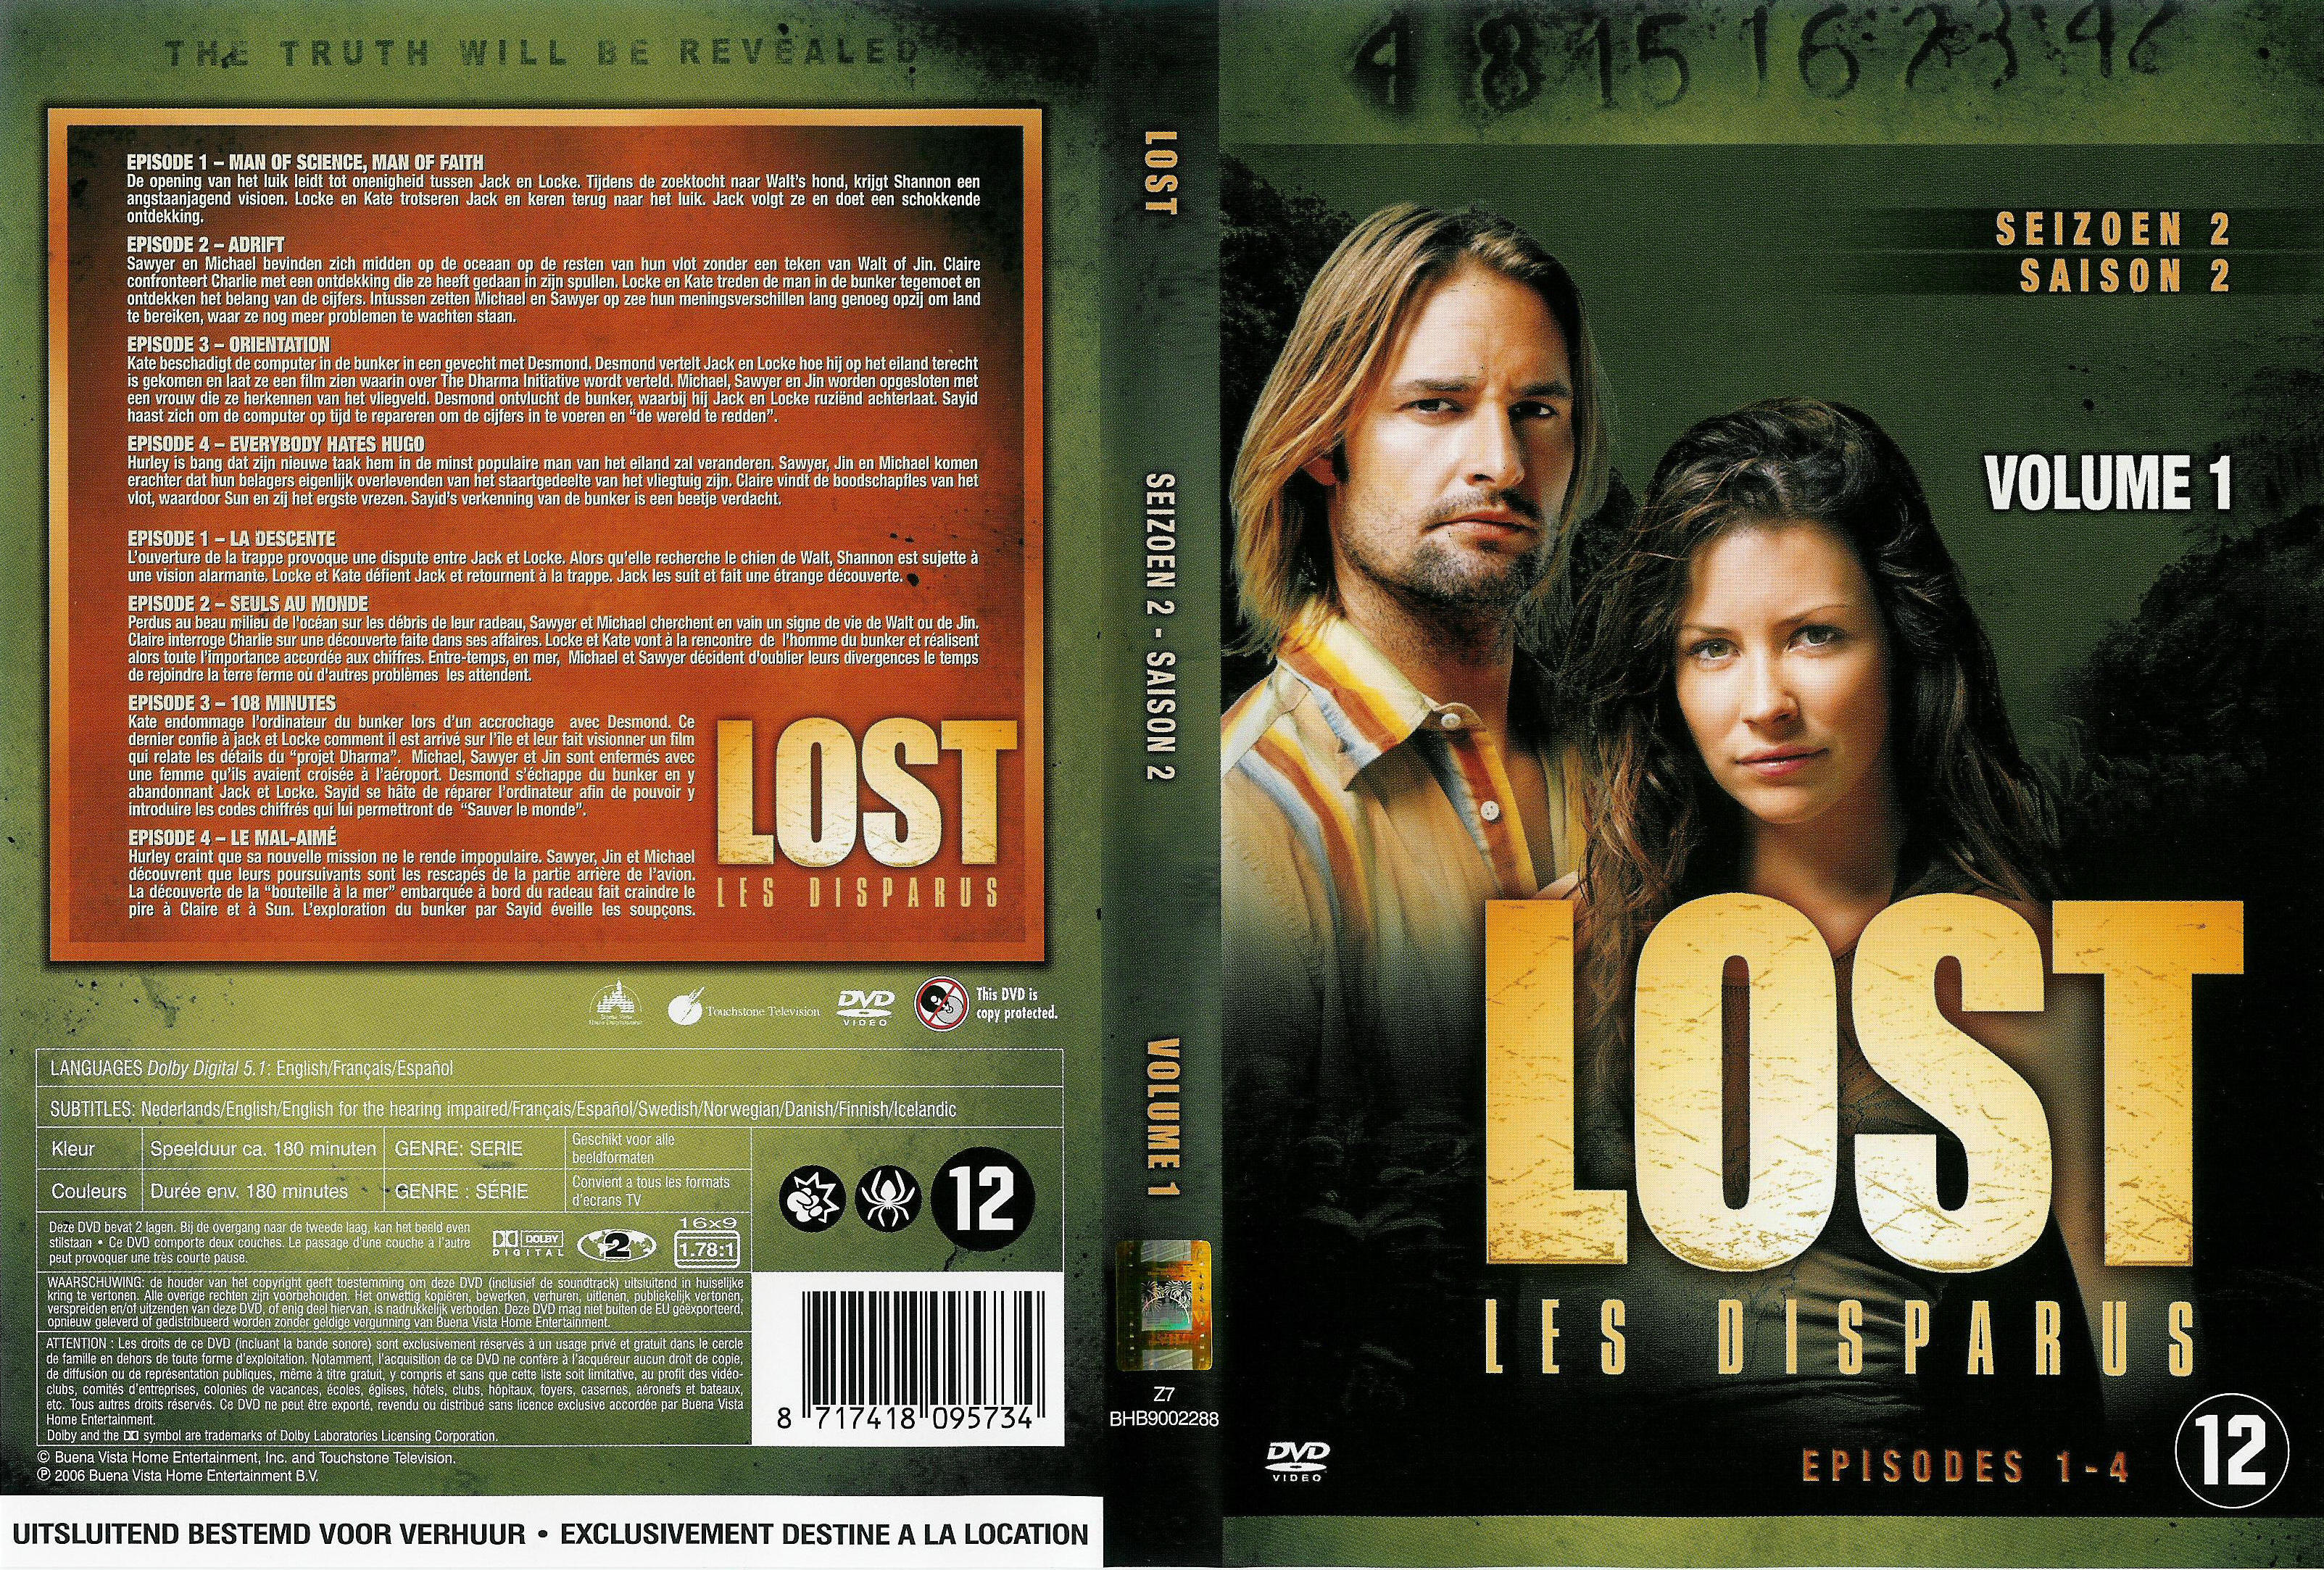 Jaquette DVD Lost Saison 2 DVD 1 v2